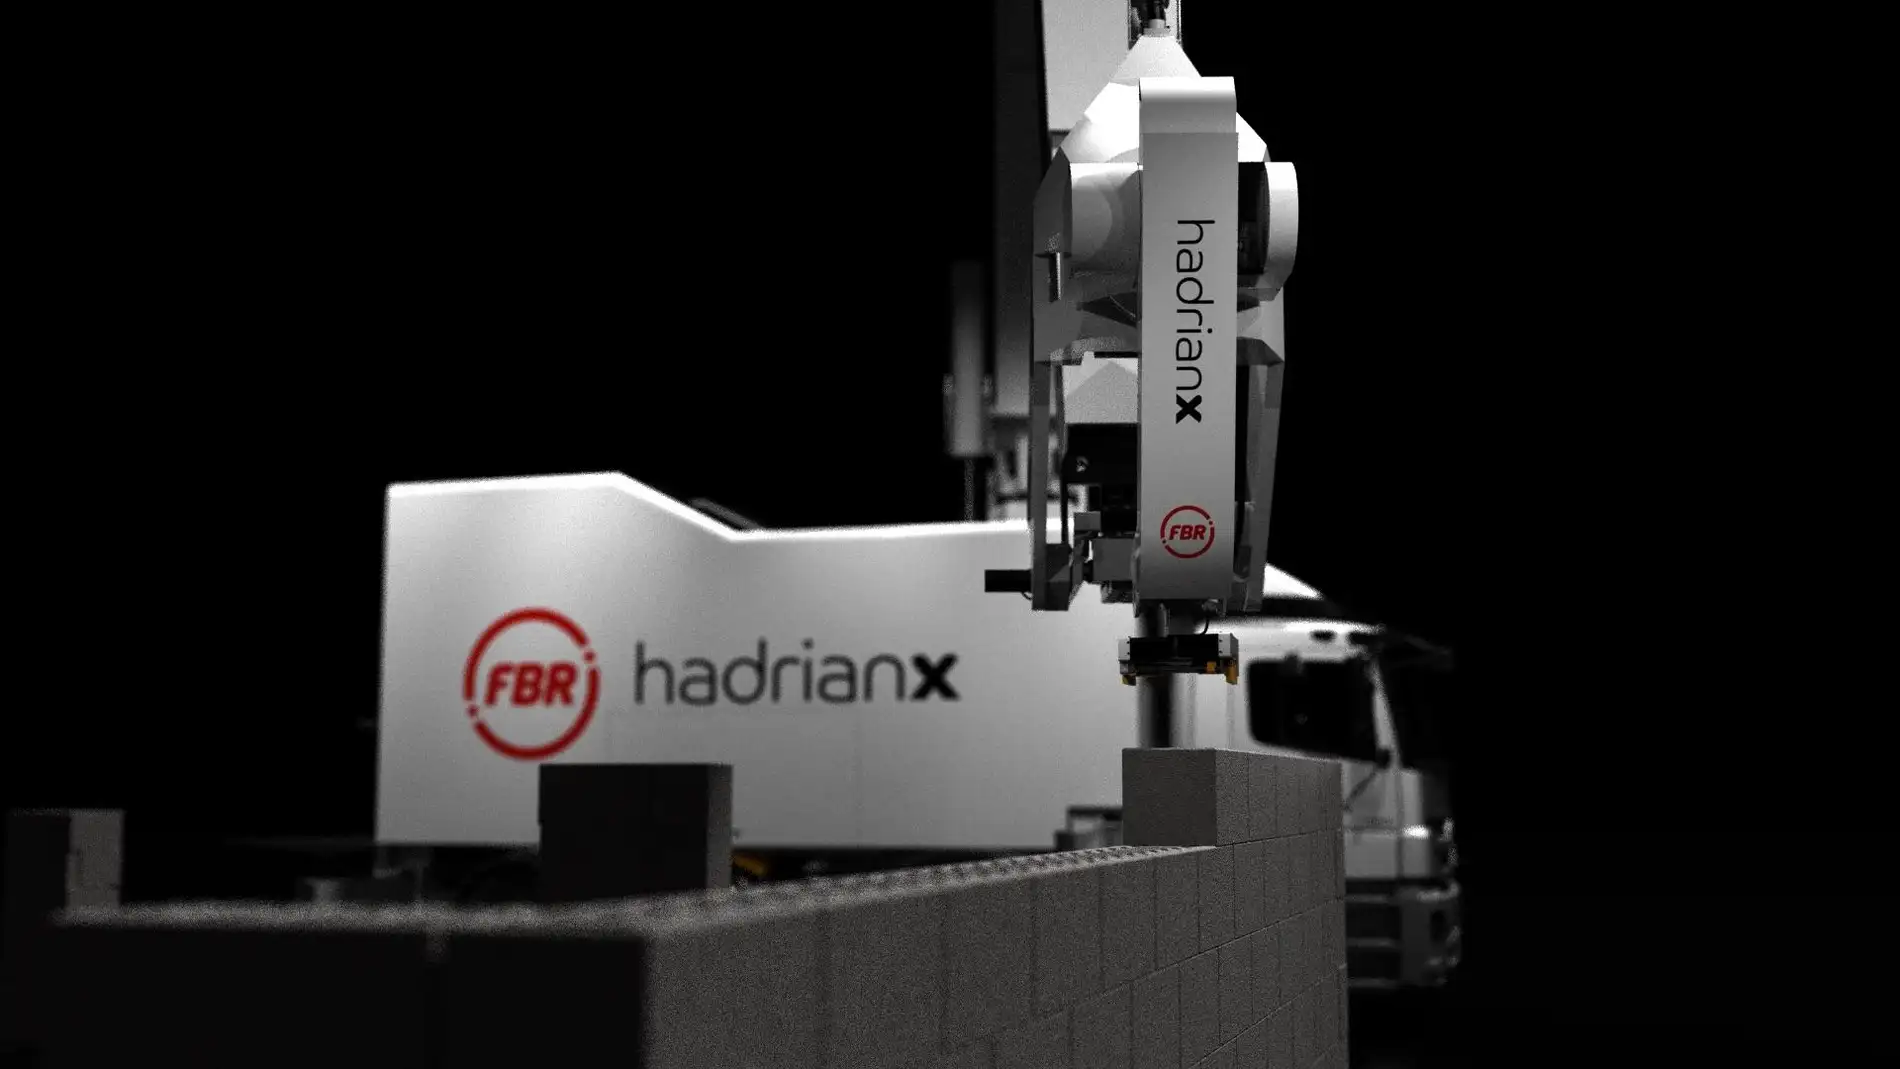 Cada robot Hadrian X podría construir entre 100 y 300 casas al año.